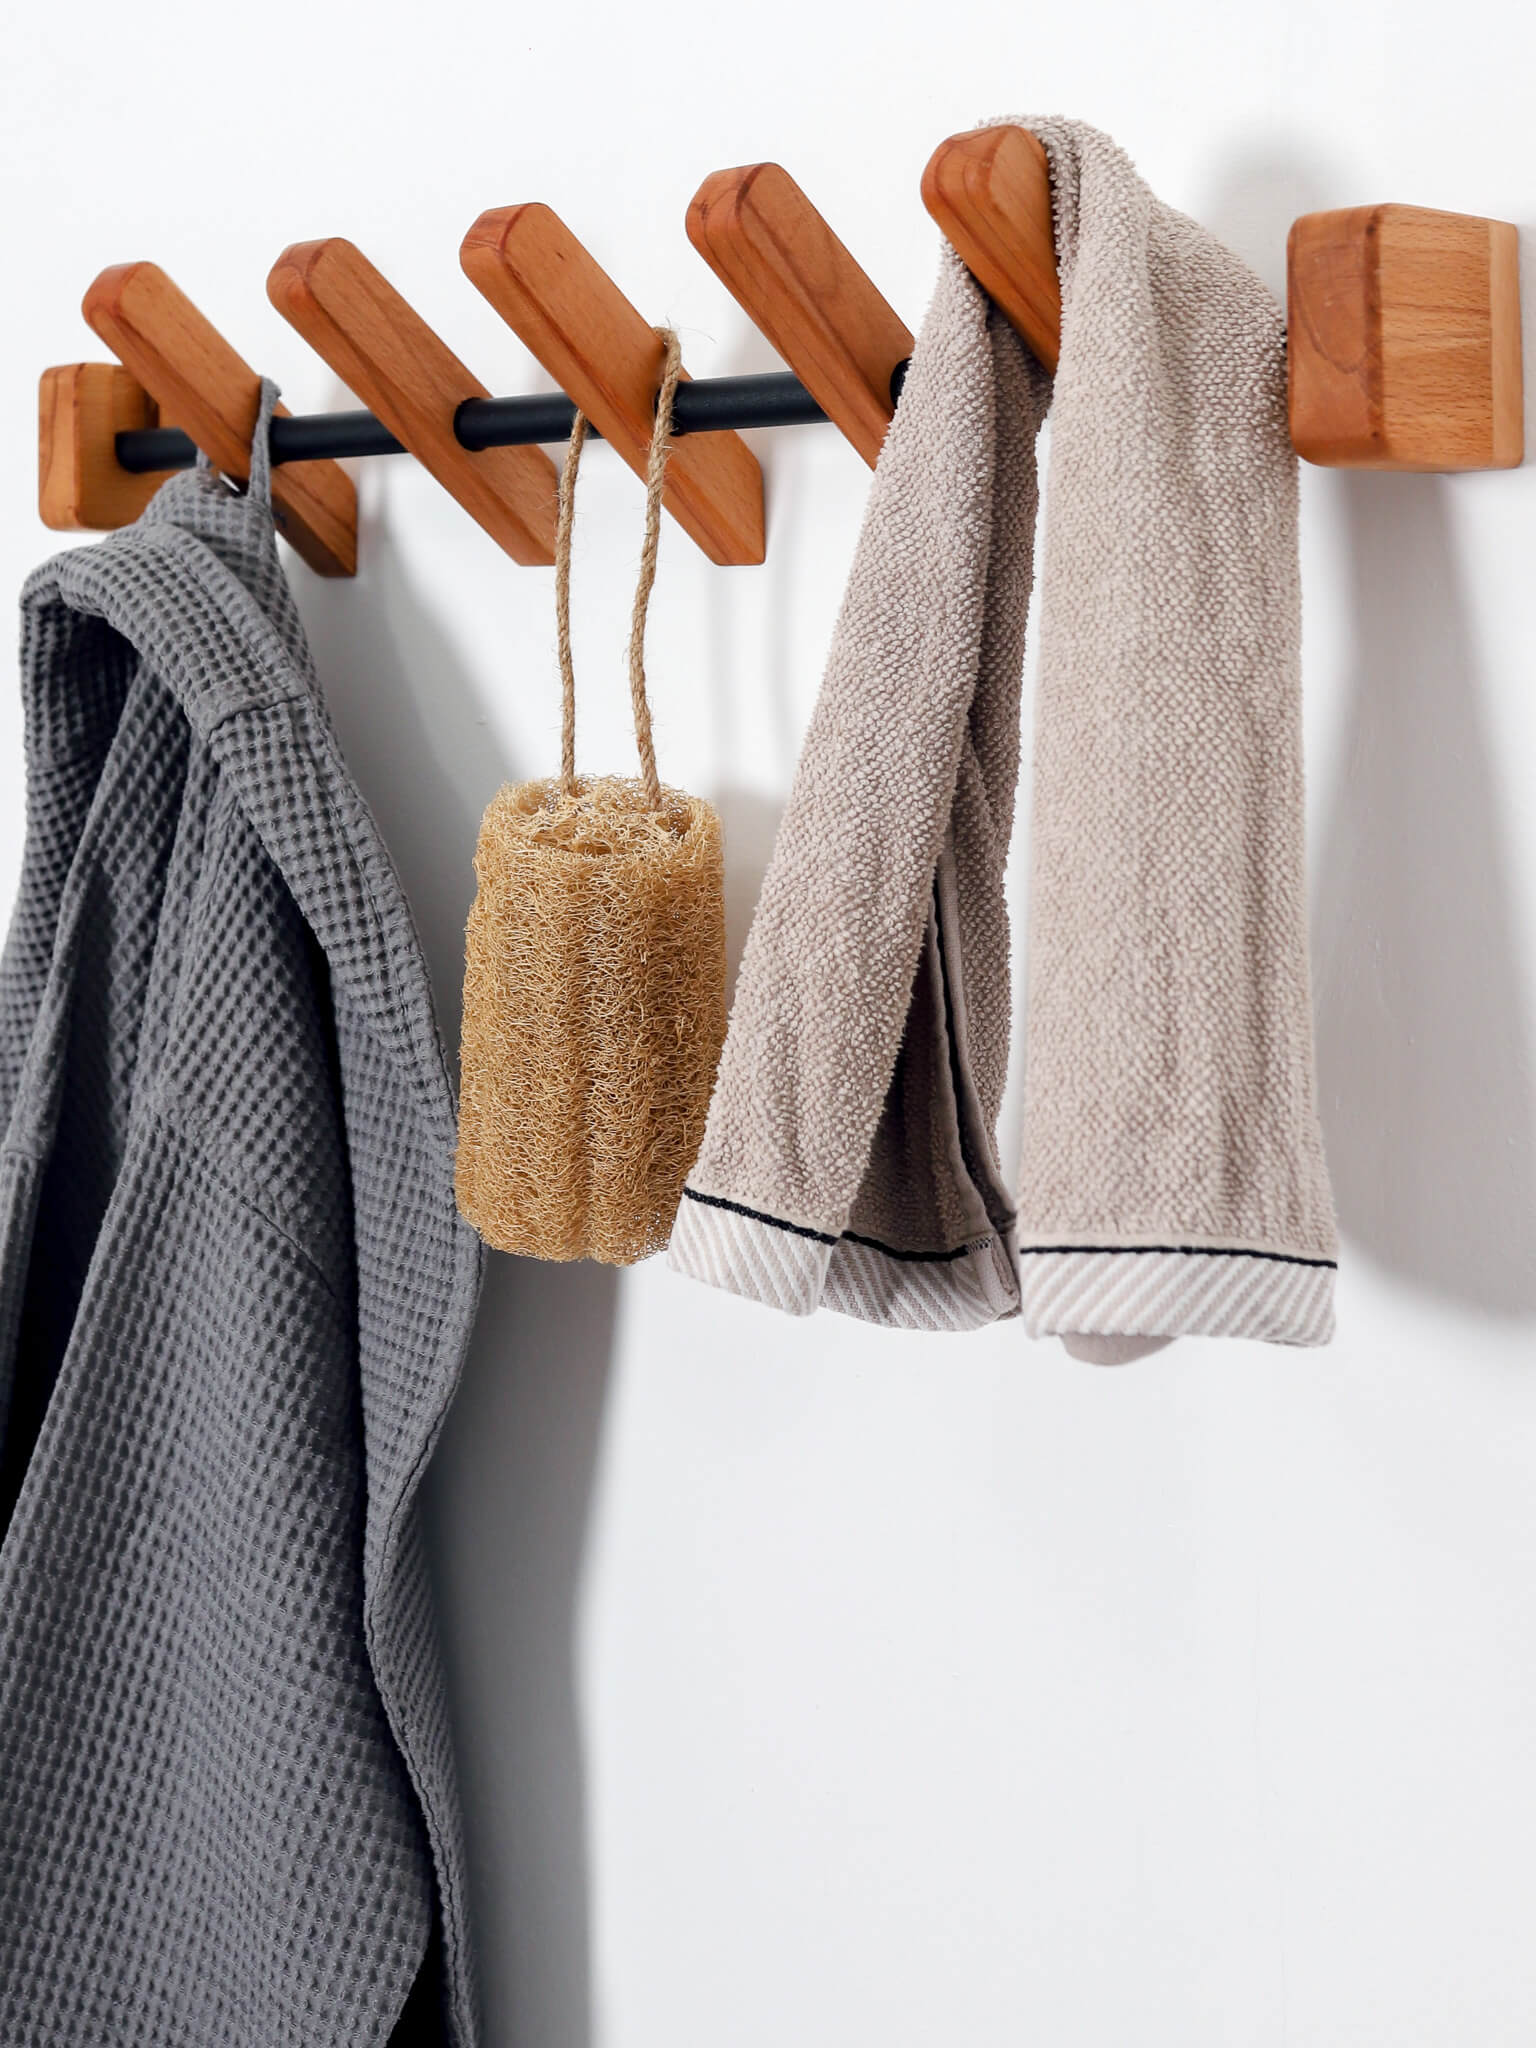 Towel Hanger